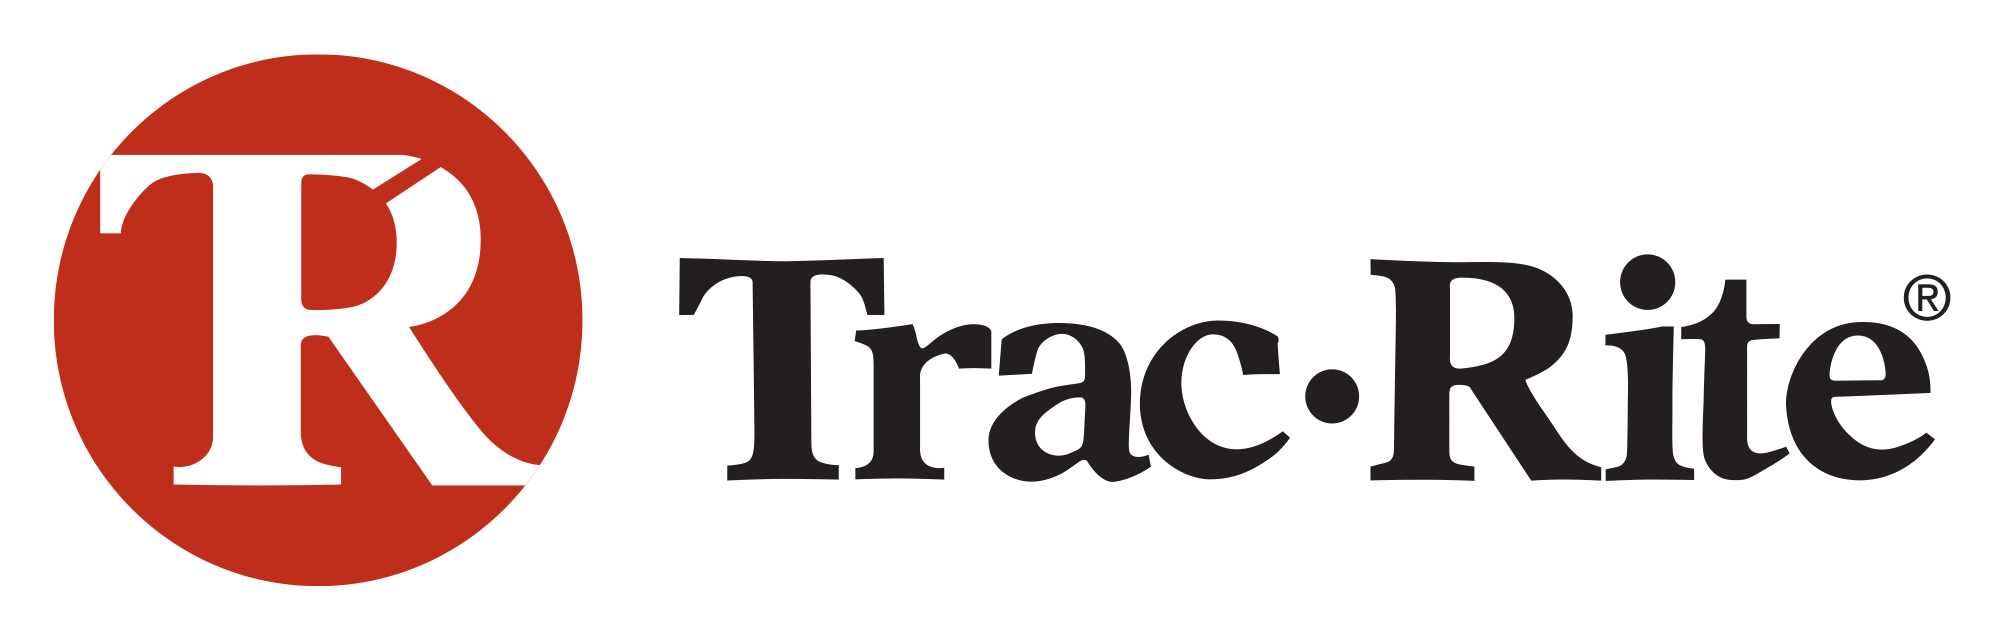 TracRite logo